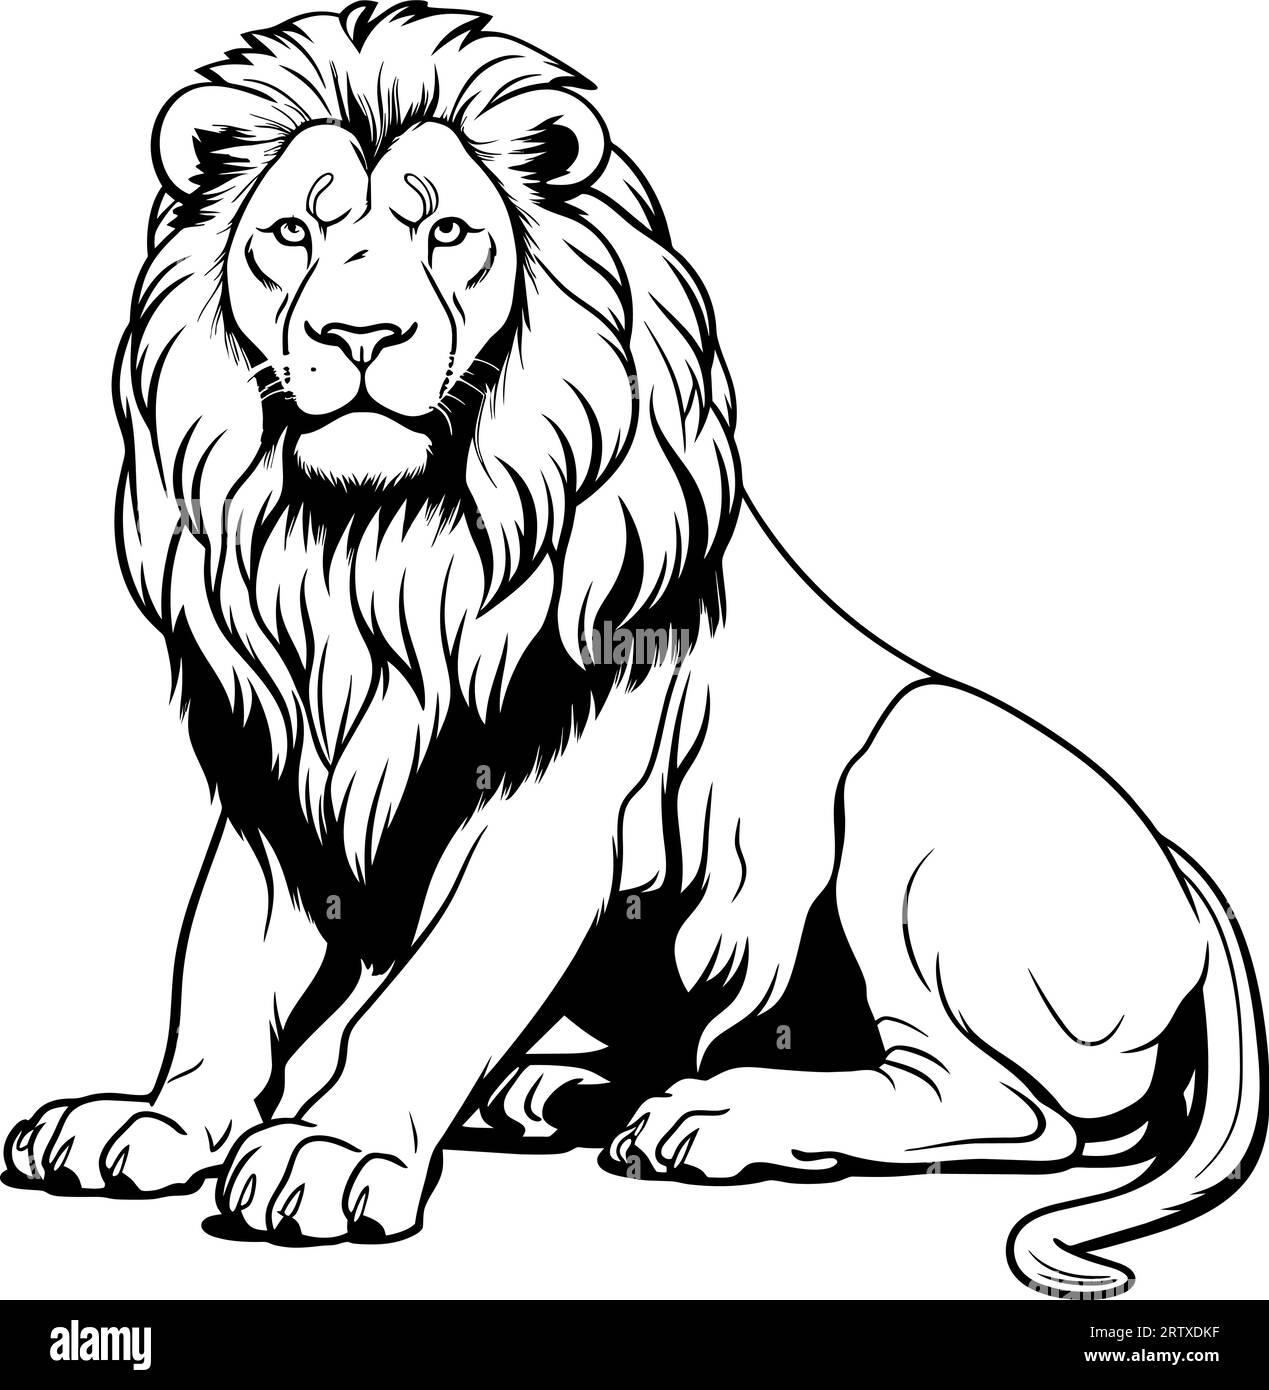 Gravure vintage isolé lion roi ensemble illustration esquisse à l'encre. Afrique chat sauvage arrière-plan animal silhouette art. Vecteur dessiné à la main noir et blanc Illustration de Vecteur